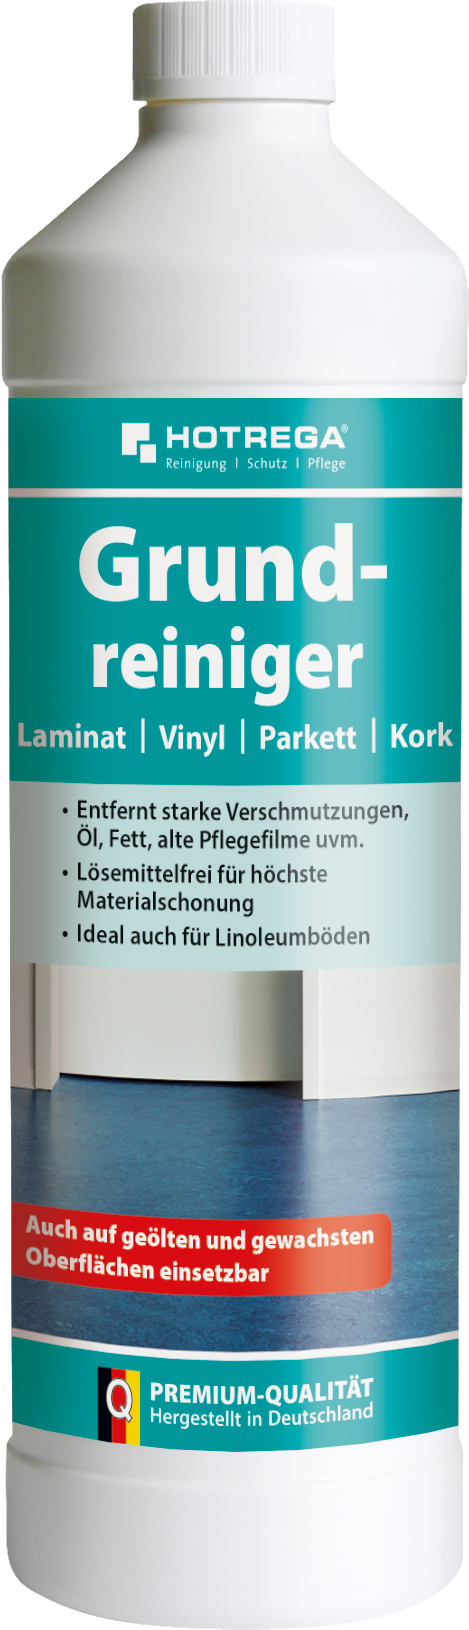 HOTREGA Grundreiniger Konzentrat 1l f.Laminat,Parkett,Kork,Vinyl